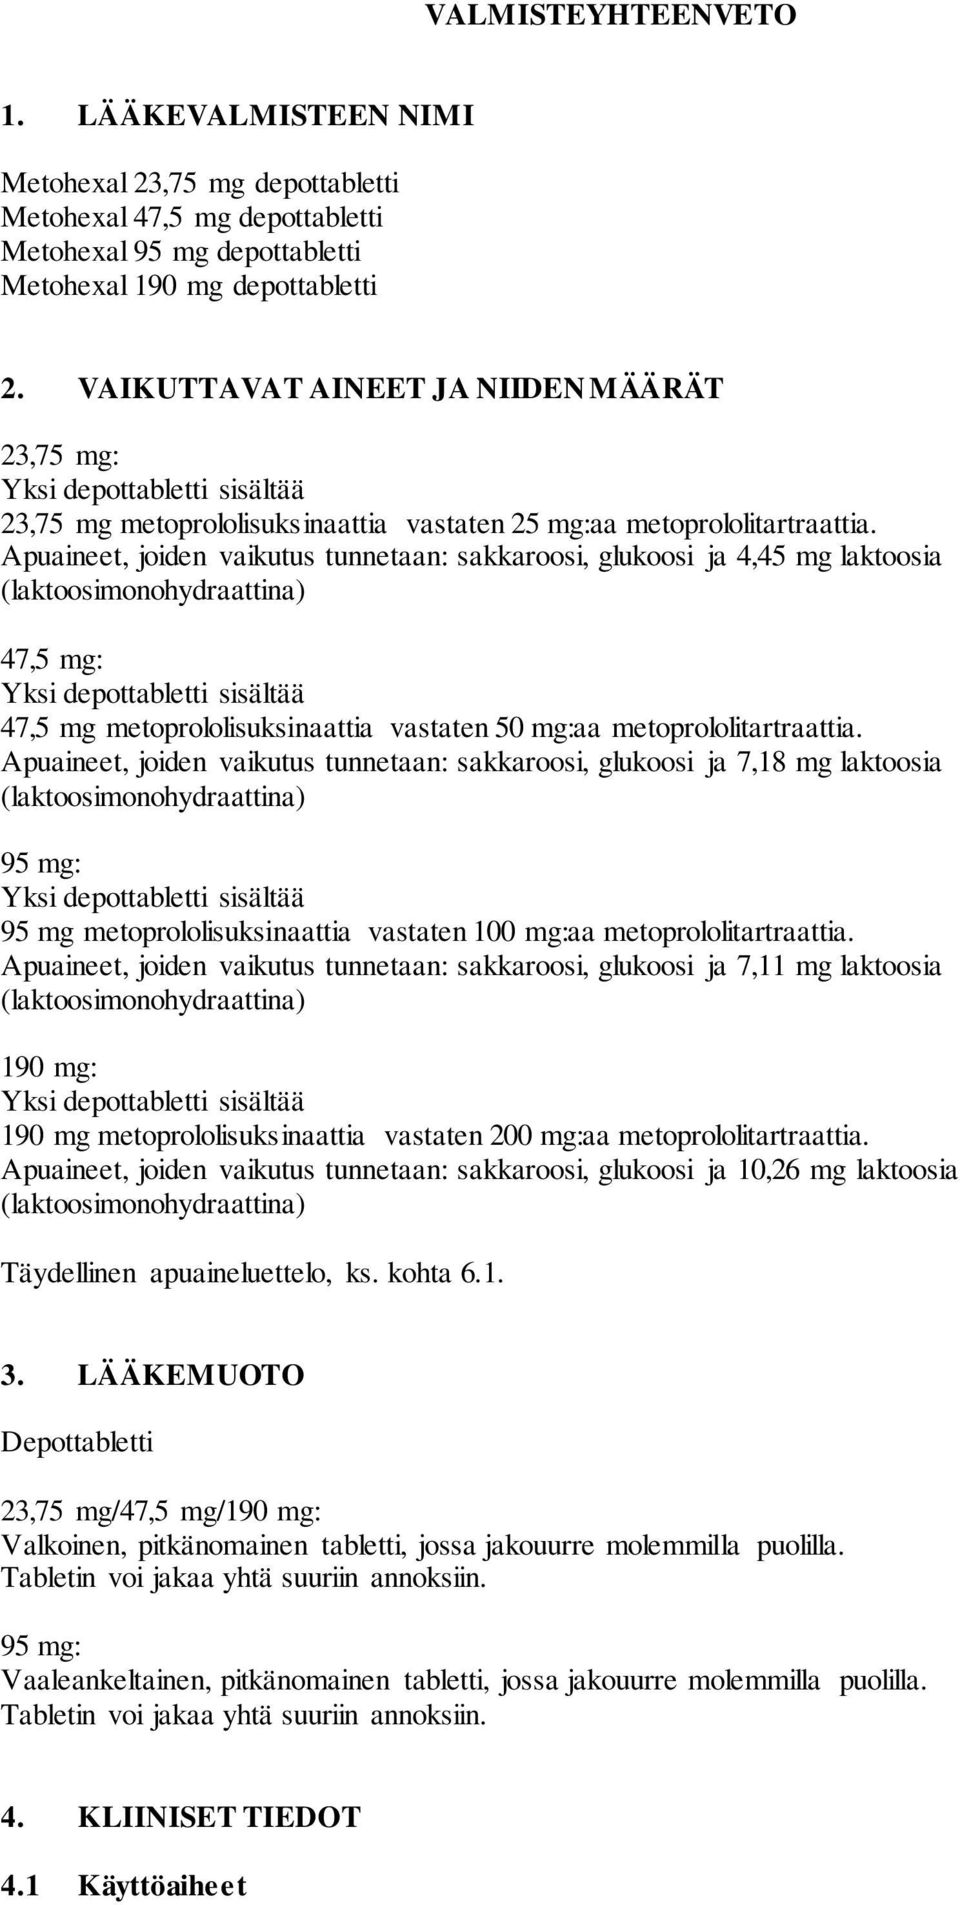 Apuaineet, joiden vaikutus tunnetaan: sakkaroosi, glukoosi ja 4,45 mg laktoosia (laktoosimonohydraattina) 47,5 mg: Yksi depottabletti sisältää 47,5 mg metoprololisuksinaattia vastaten 50 mg:aa